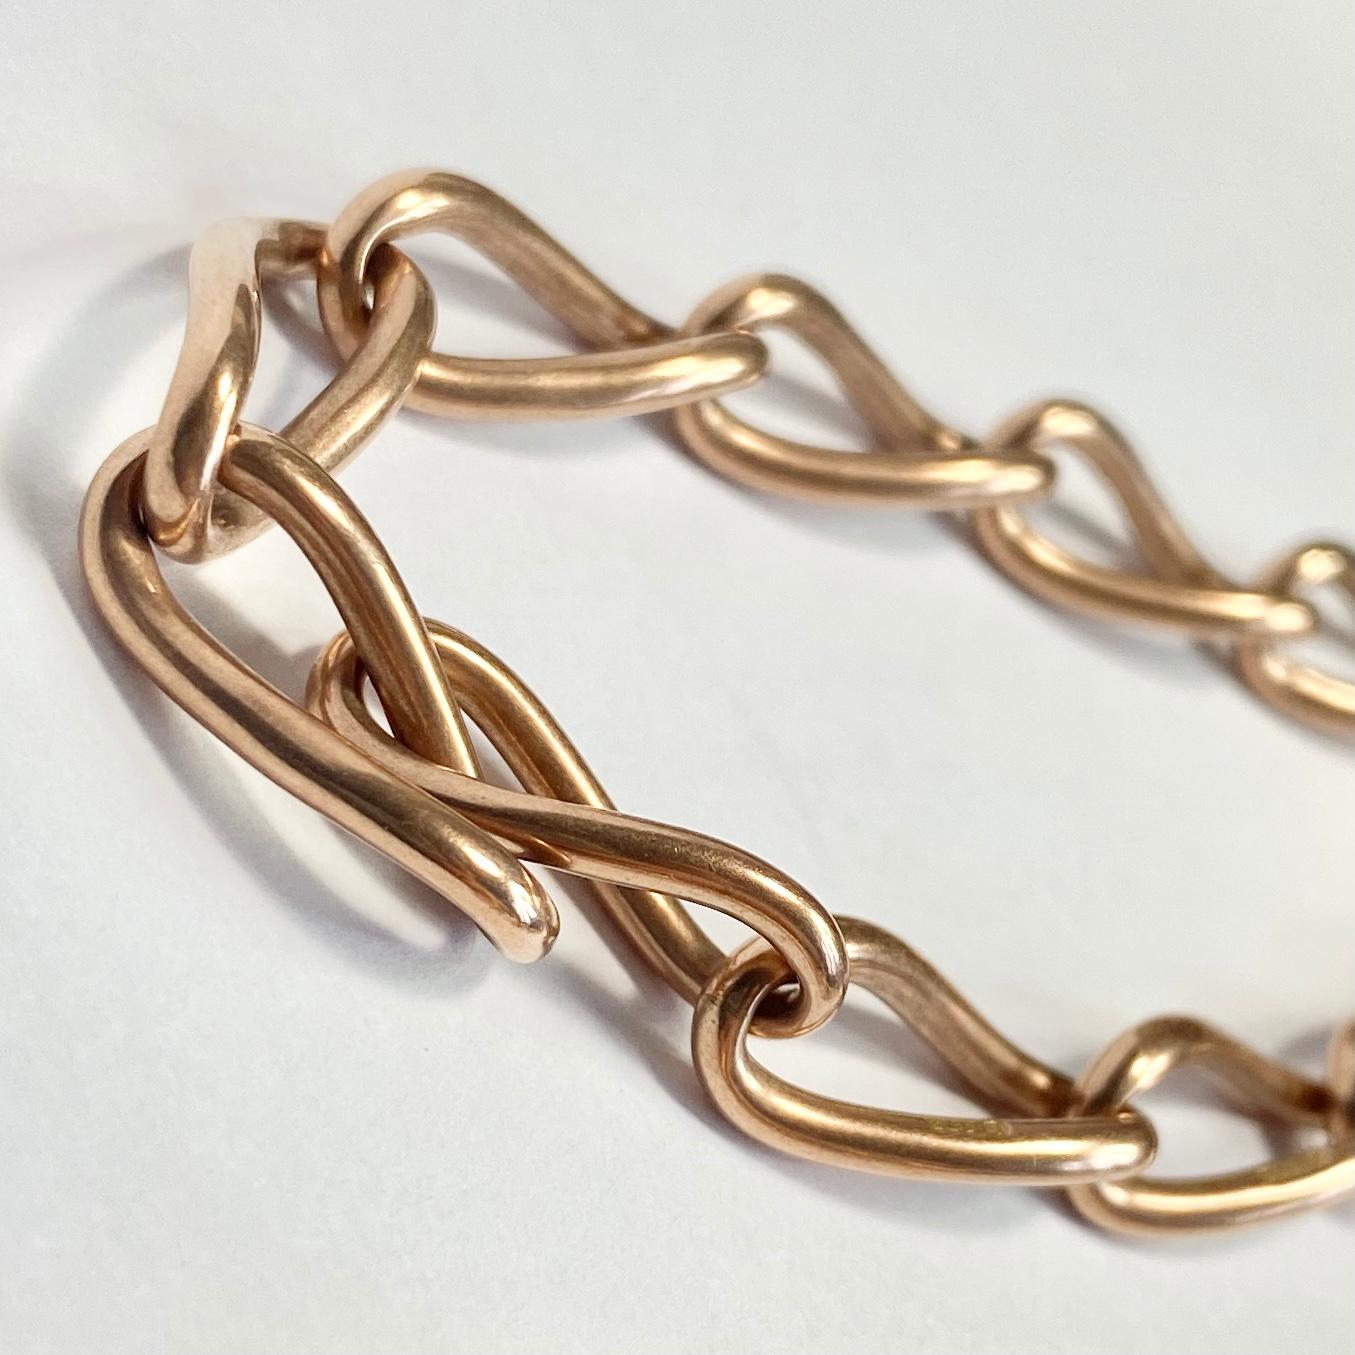 Cette chaîne albert trapue est composée de larges maillons et peut être portée comme un collier. À une extrémité, il y a une pince à chien et la chaîne contient également une barre en T. Modèle en or rose 9ct. 

Longueur avec poignée : 34.5cm